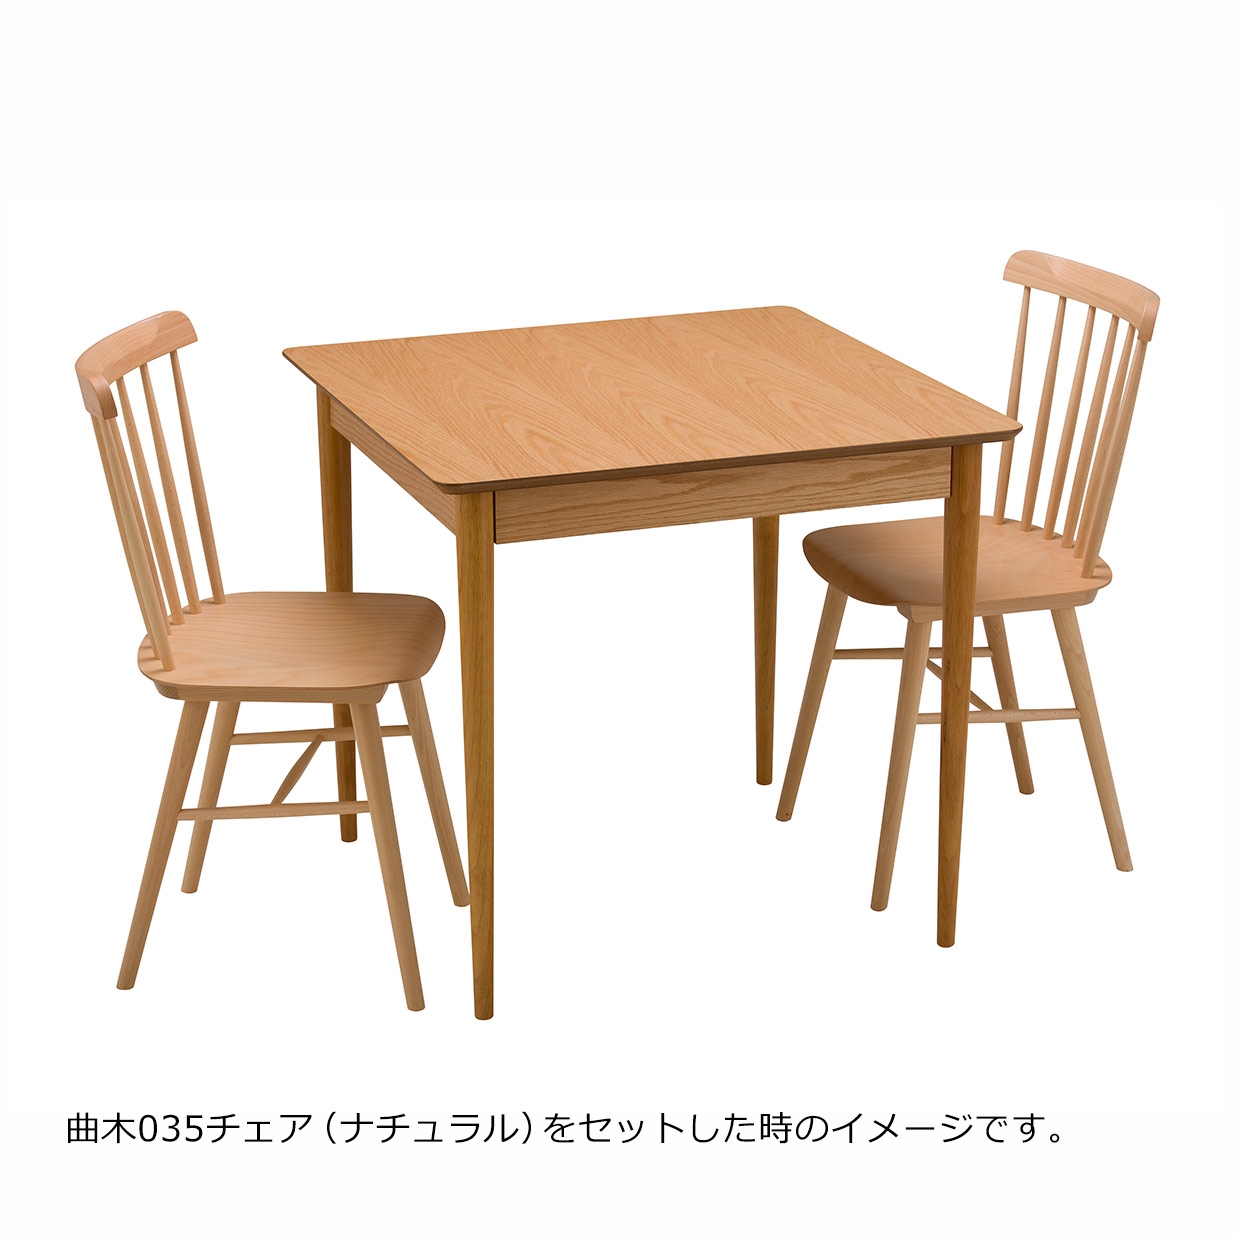 ダイニングテーブルBF6126R【送料無料】オーク